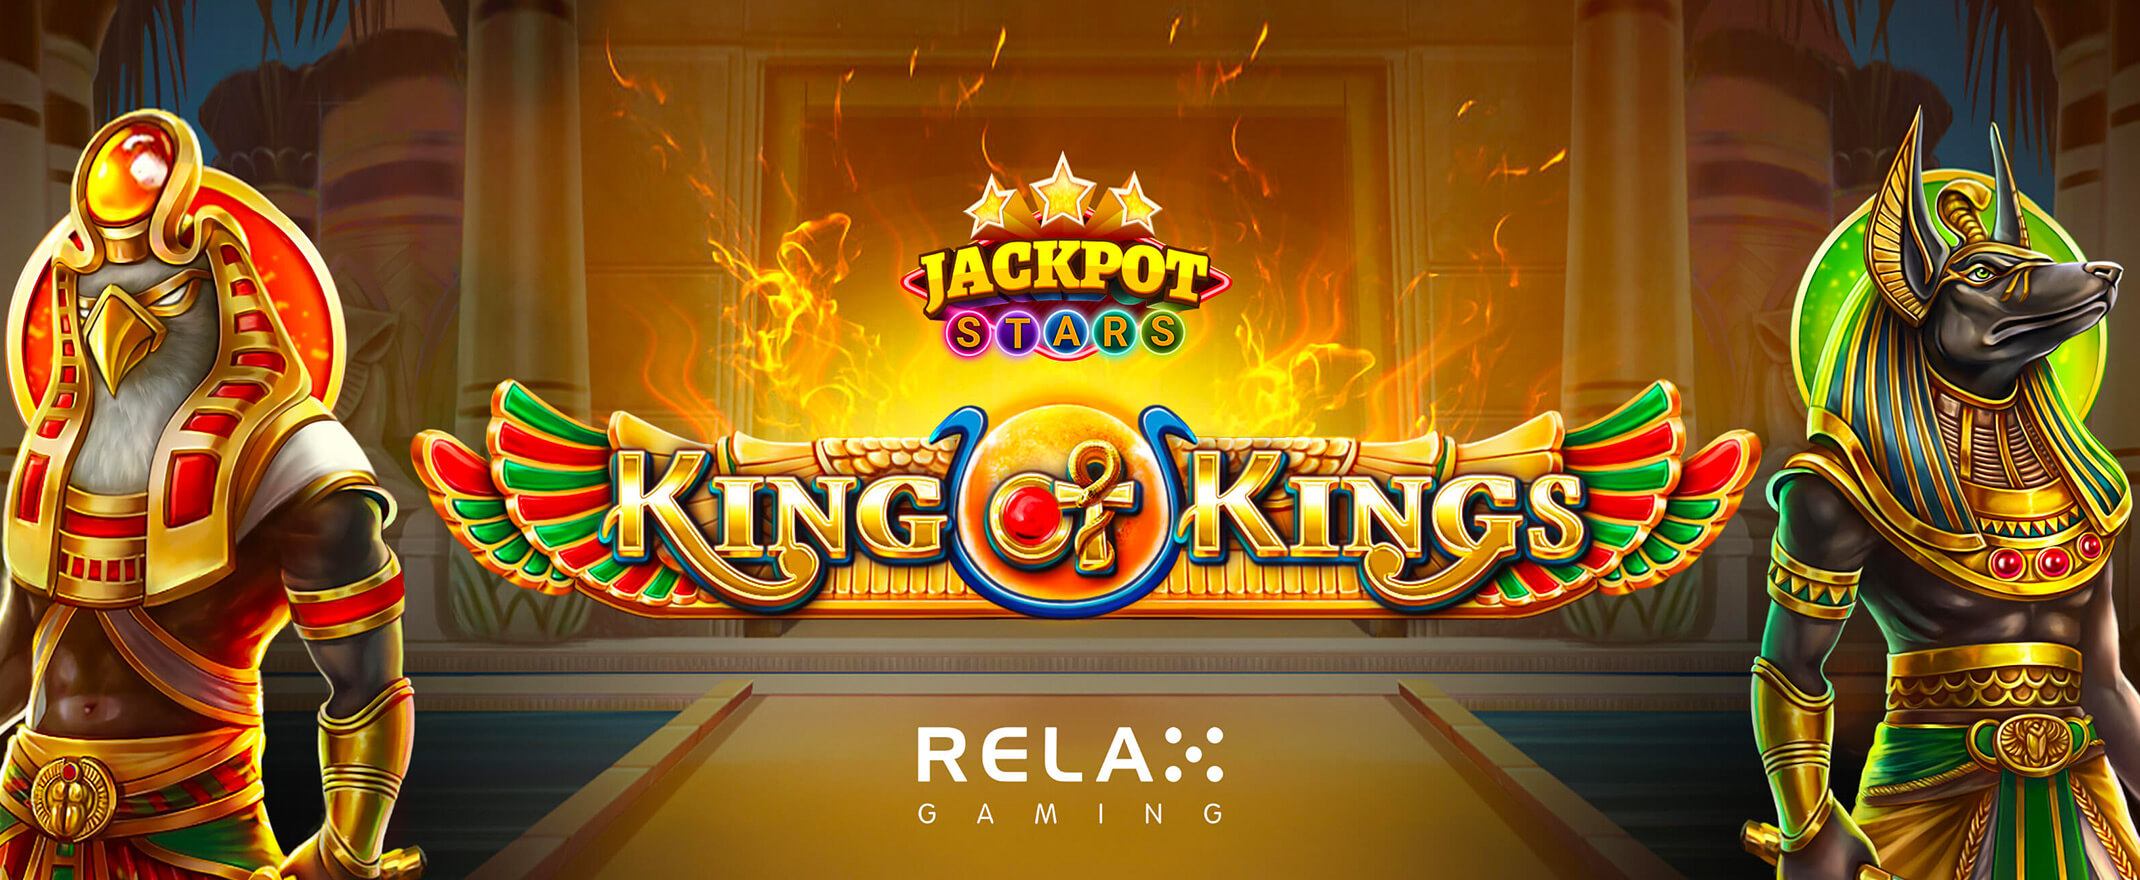 Kings of Kings - Relax gaming